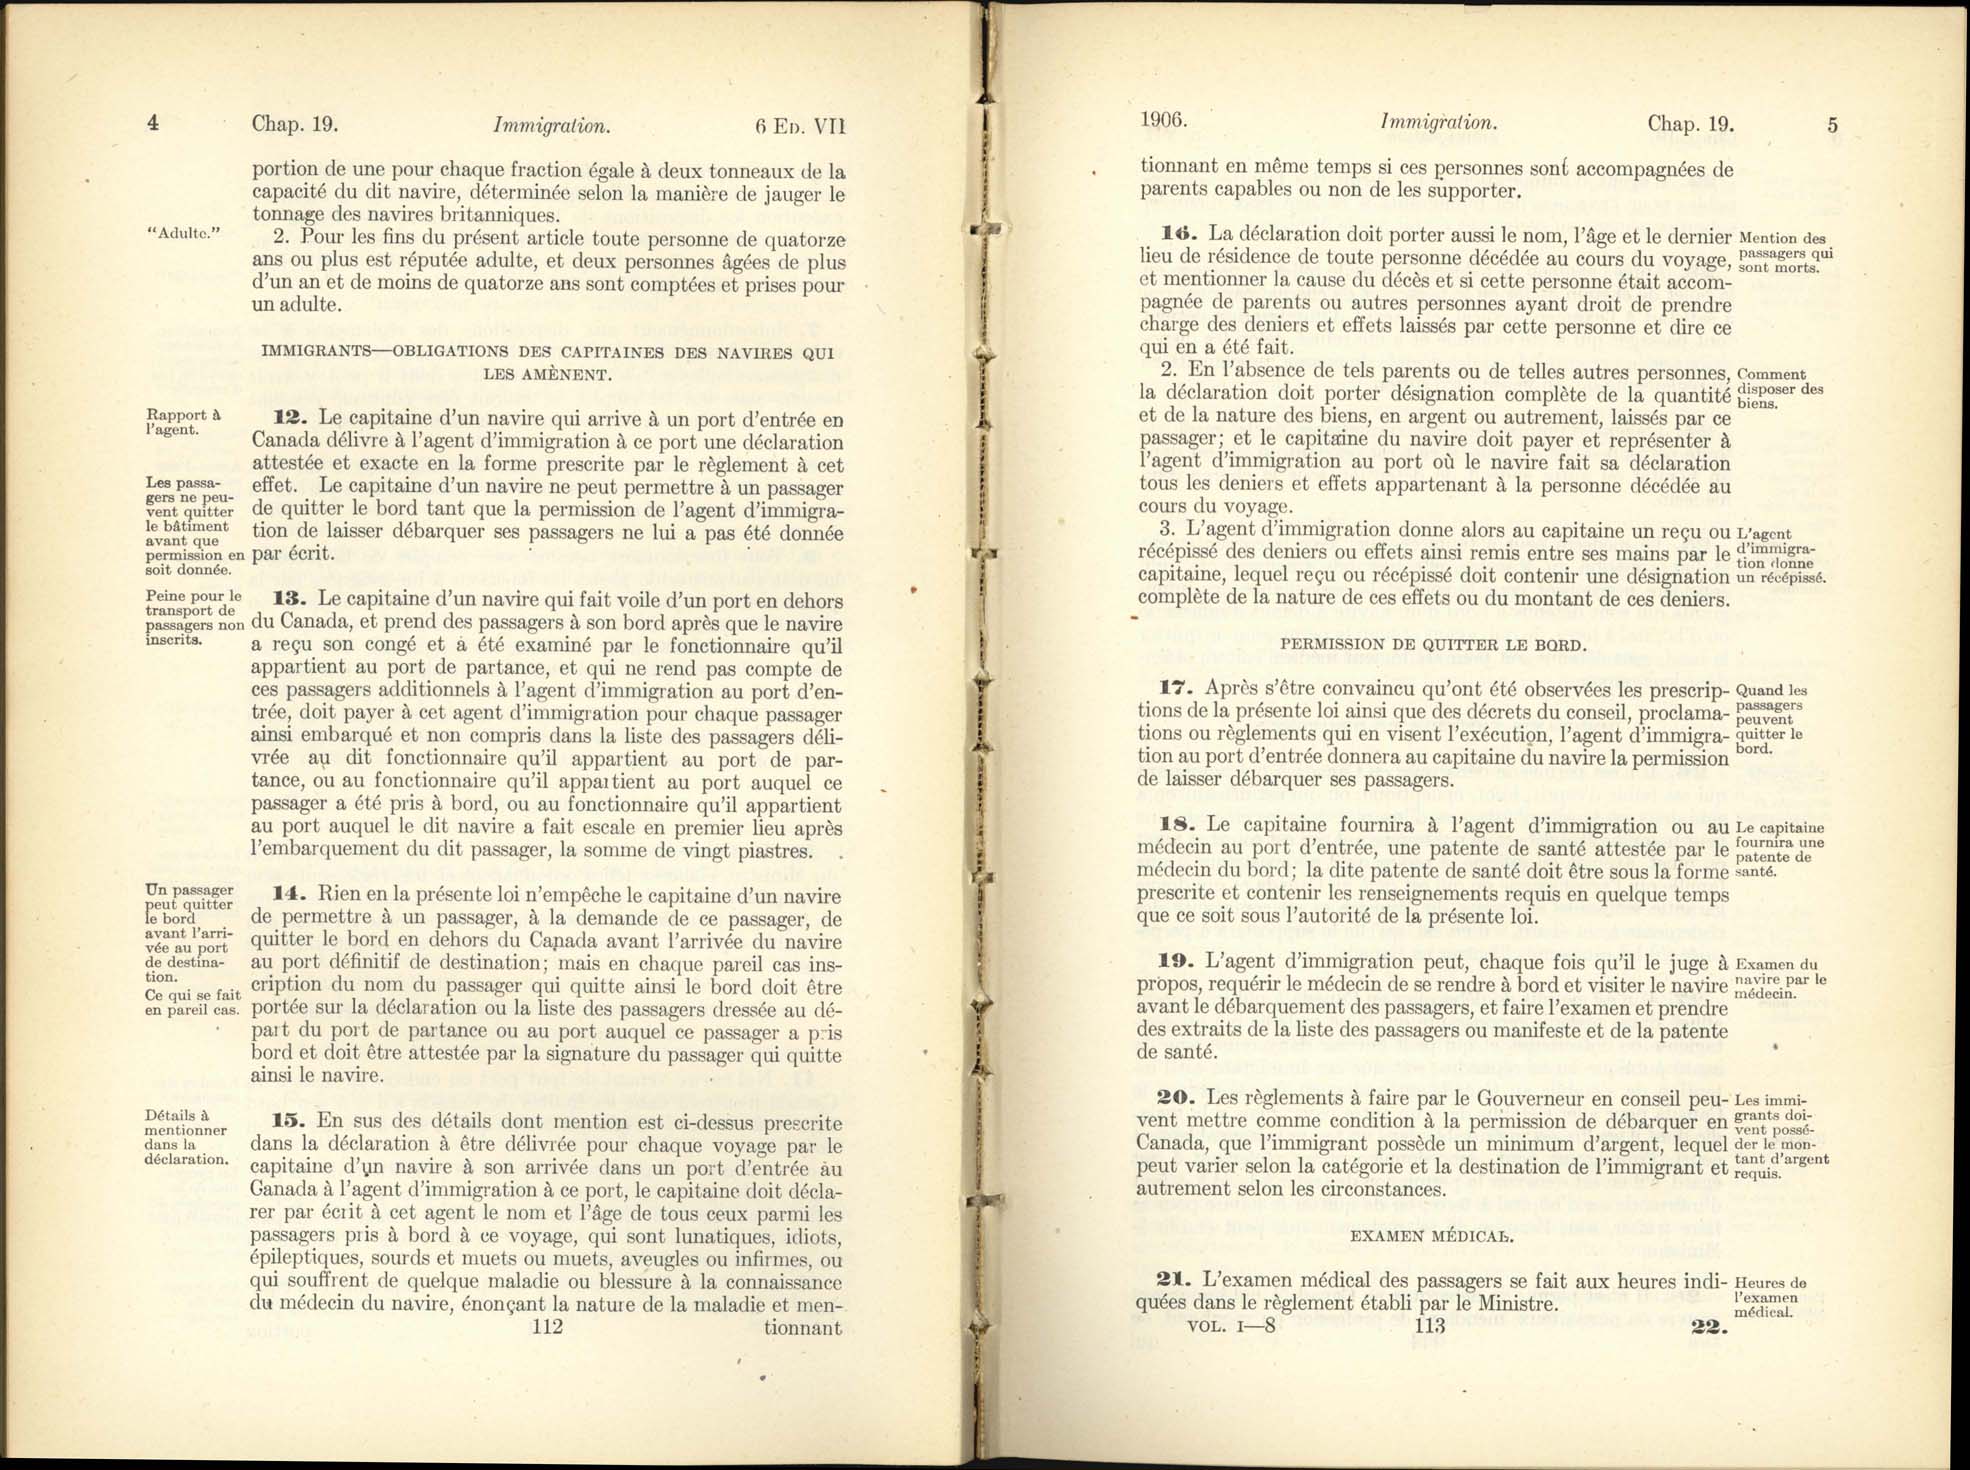 Chap. 19 Page 112, 113 Acte de l’immigration, 1906